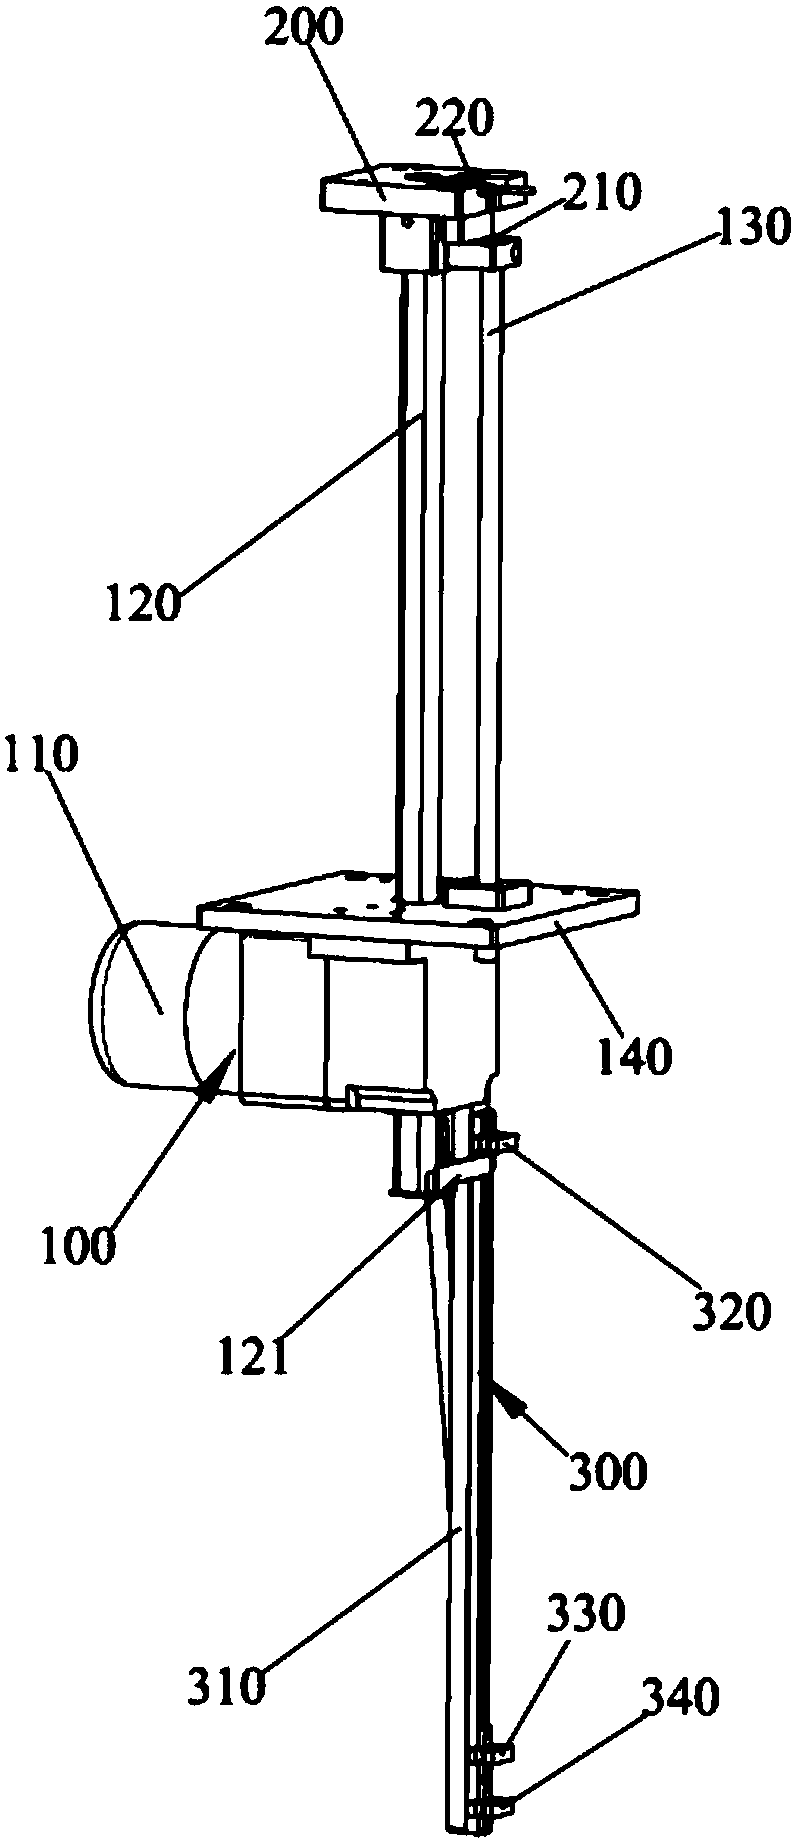 Discharging mechanism applied to bottle cap production